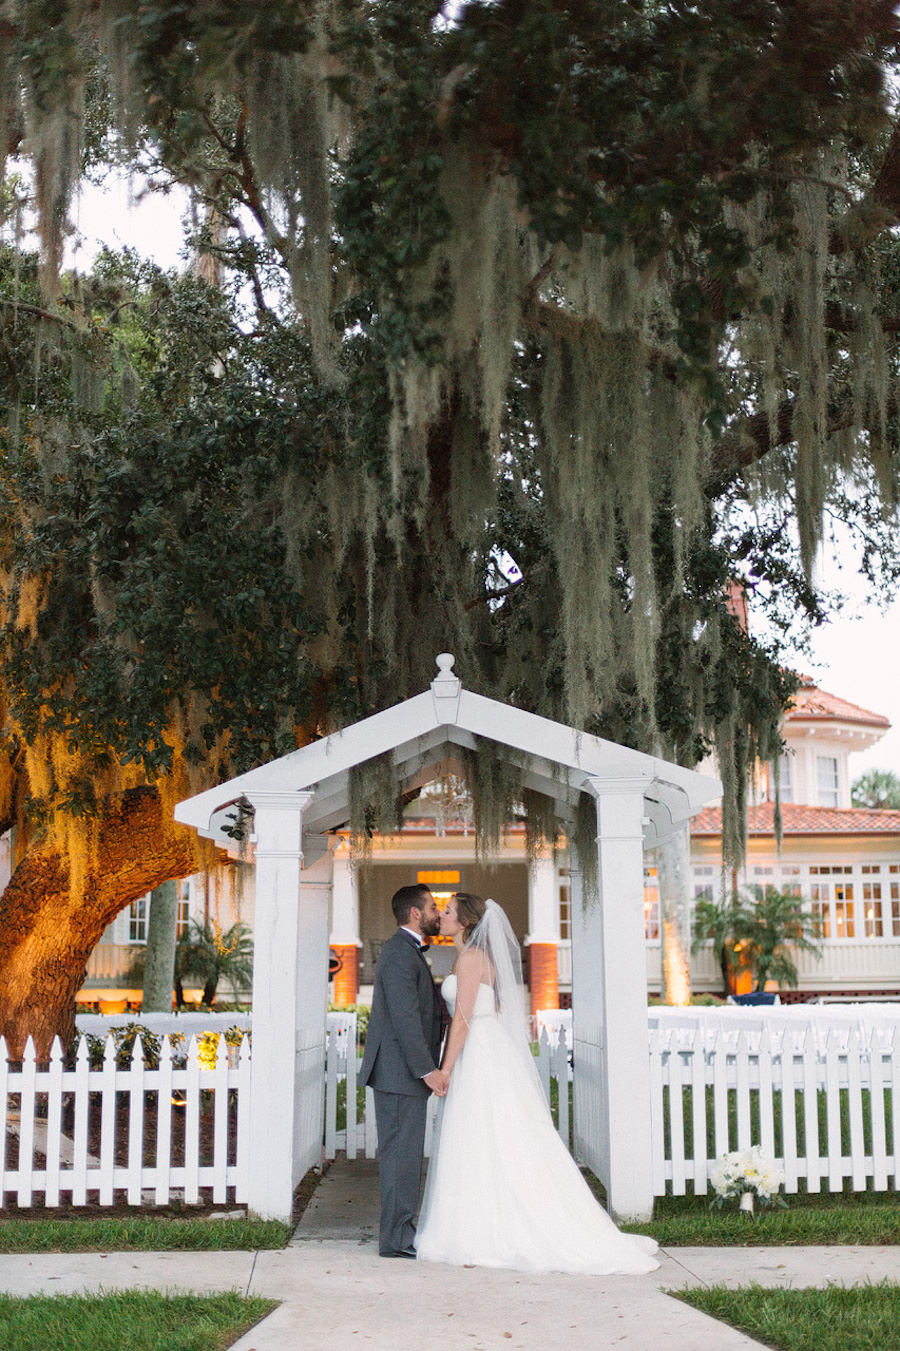 Outdoor, Florida Bride and Groom Wedding Portrait | Bradenton Wedding Venue Palmetto Riverside Bed and Breakfast